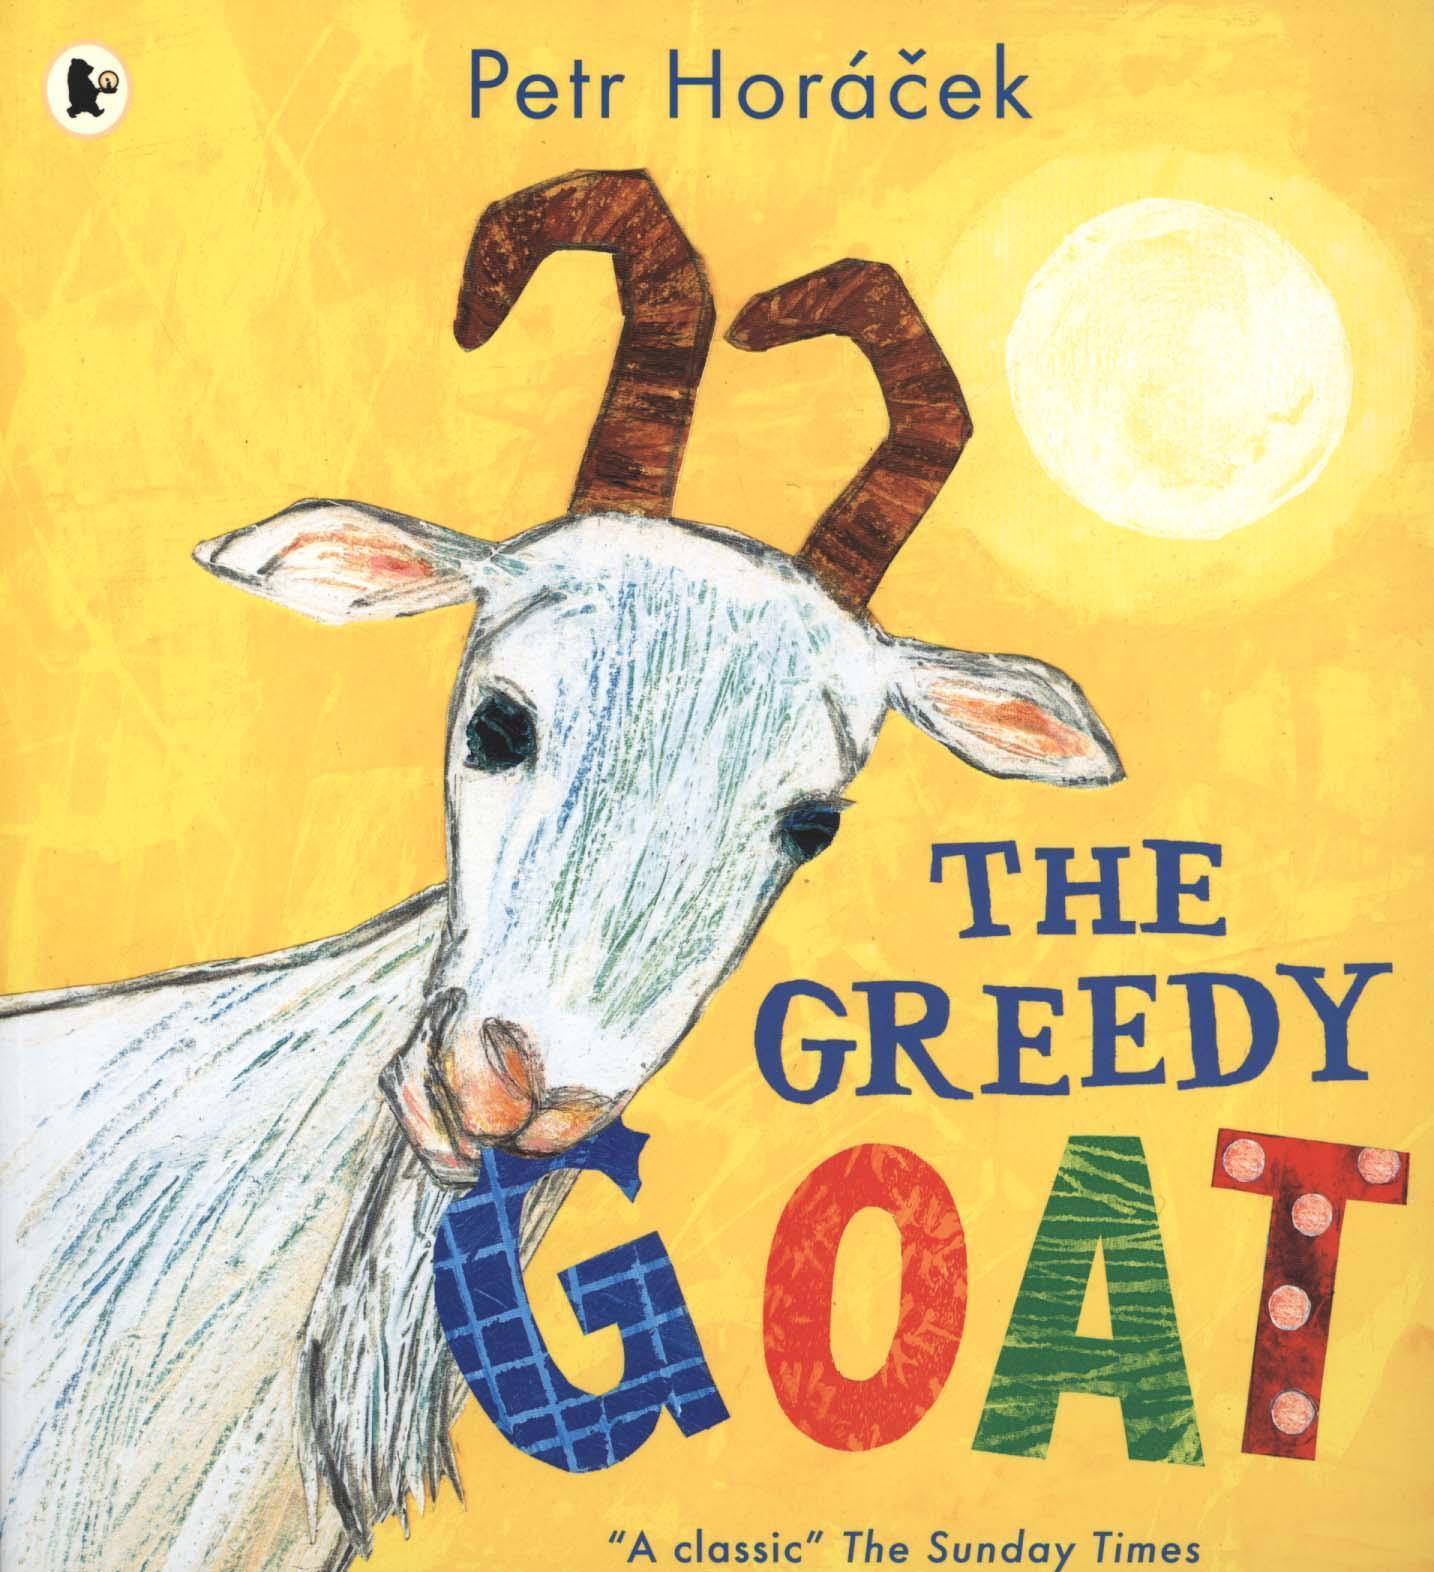 Greedy Goat - Petr Horacek